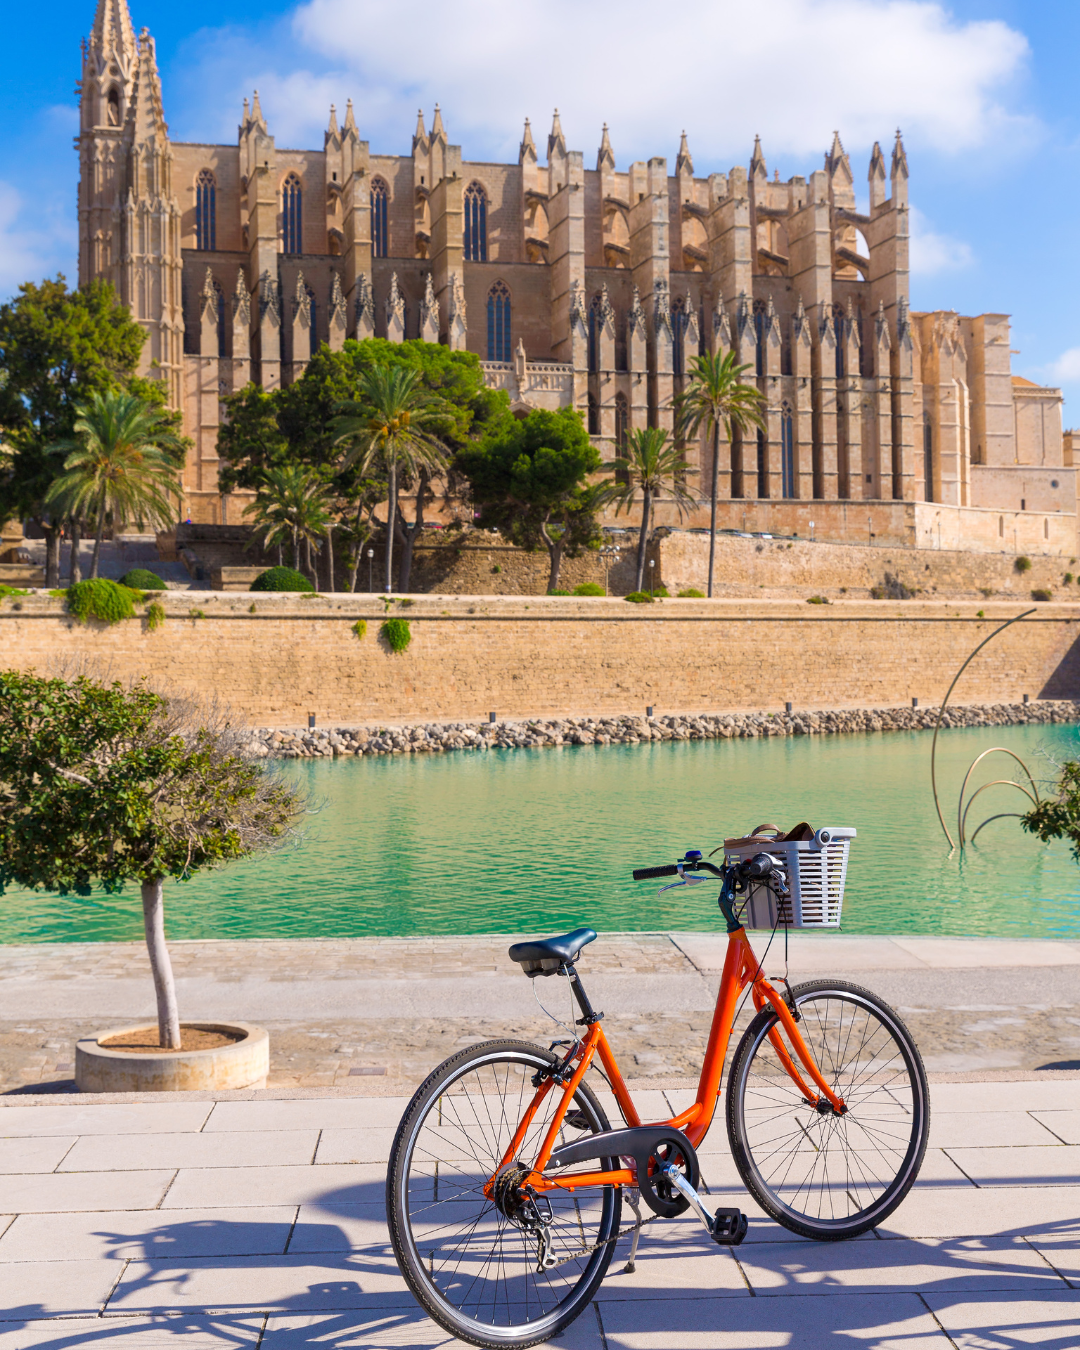 Catedral-Basílica de Santa María de Mallorca, La Seu, Palma Mallorca, Spain - Mallorca Holidays Barter's Travelnet